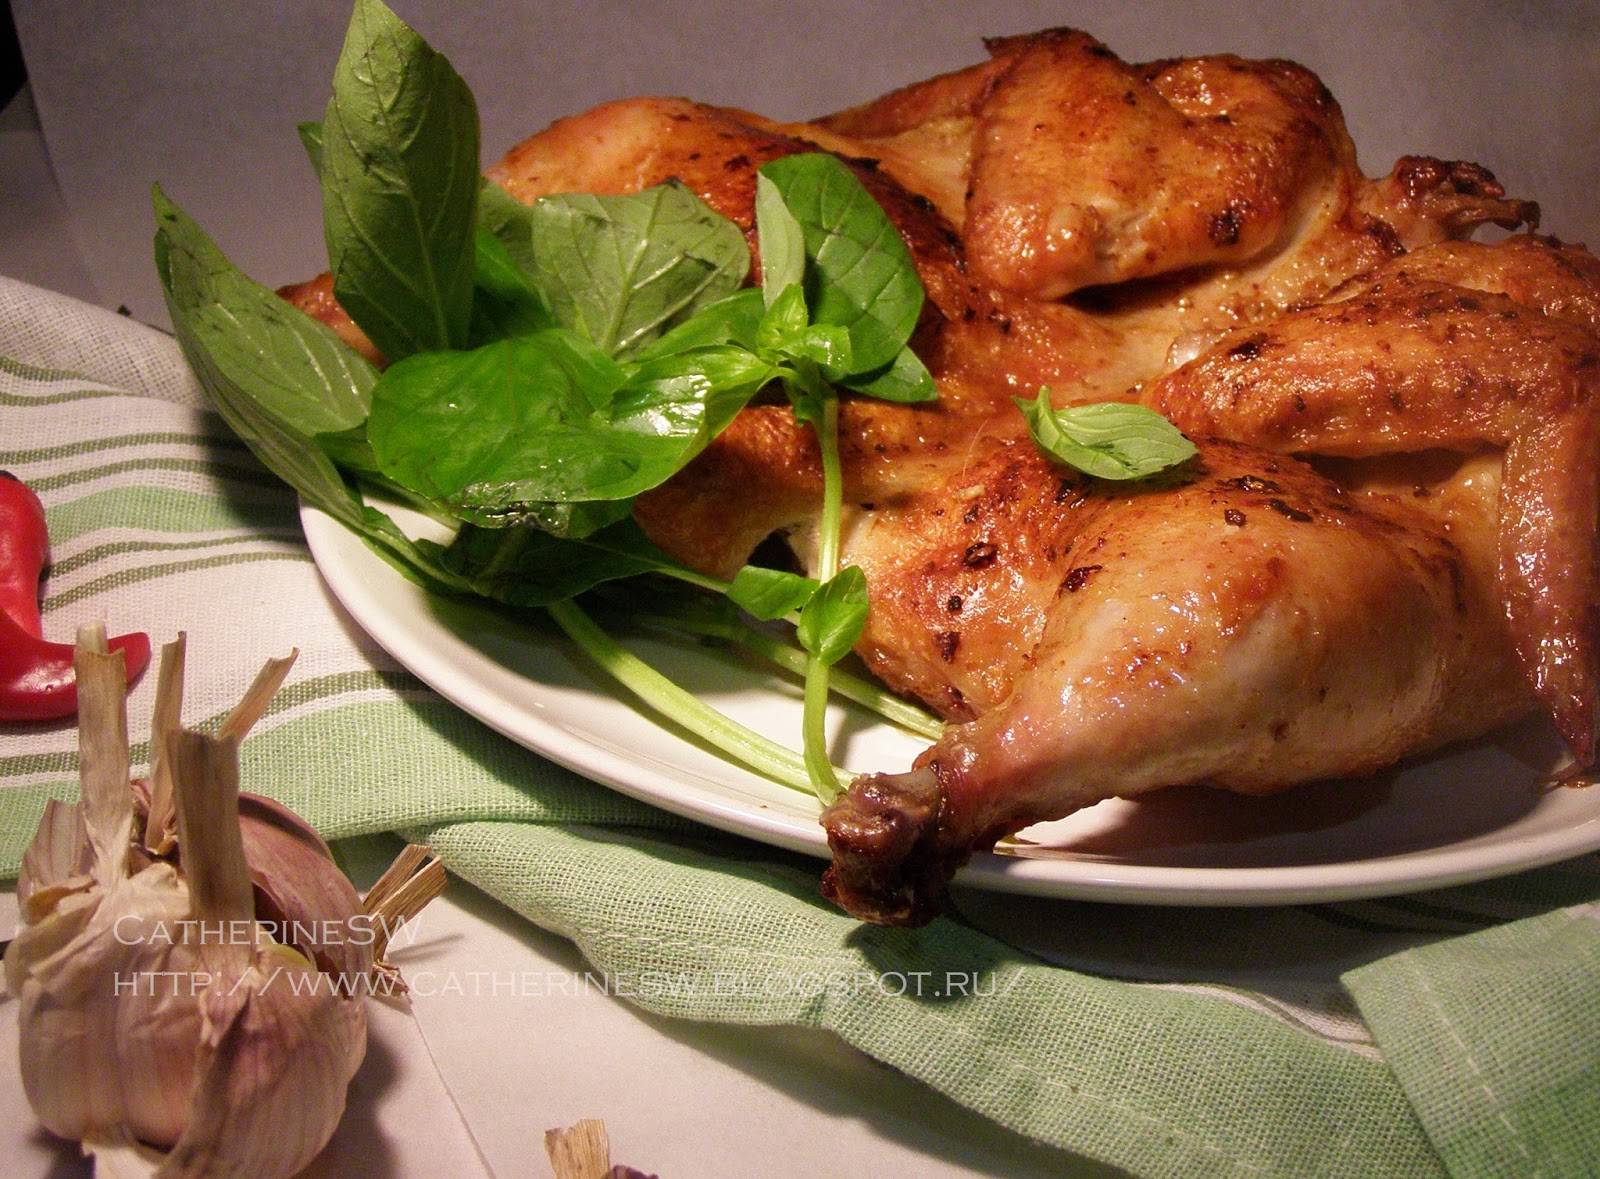 Как готовиться цыпленок табака в духовке по пошаговому рецепту